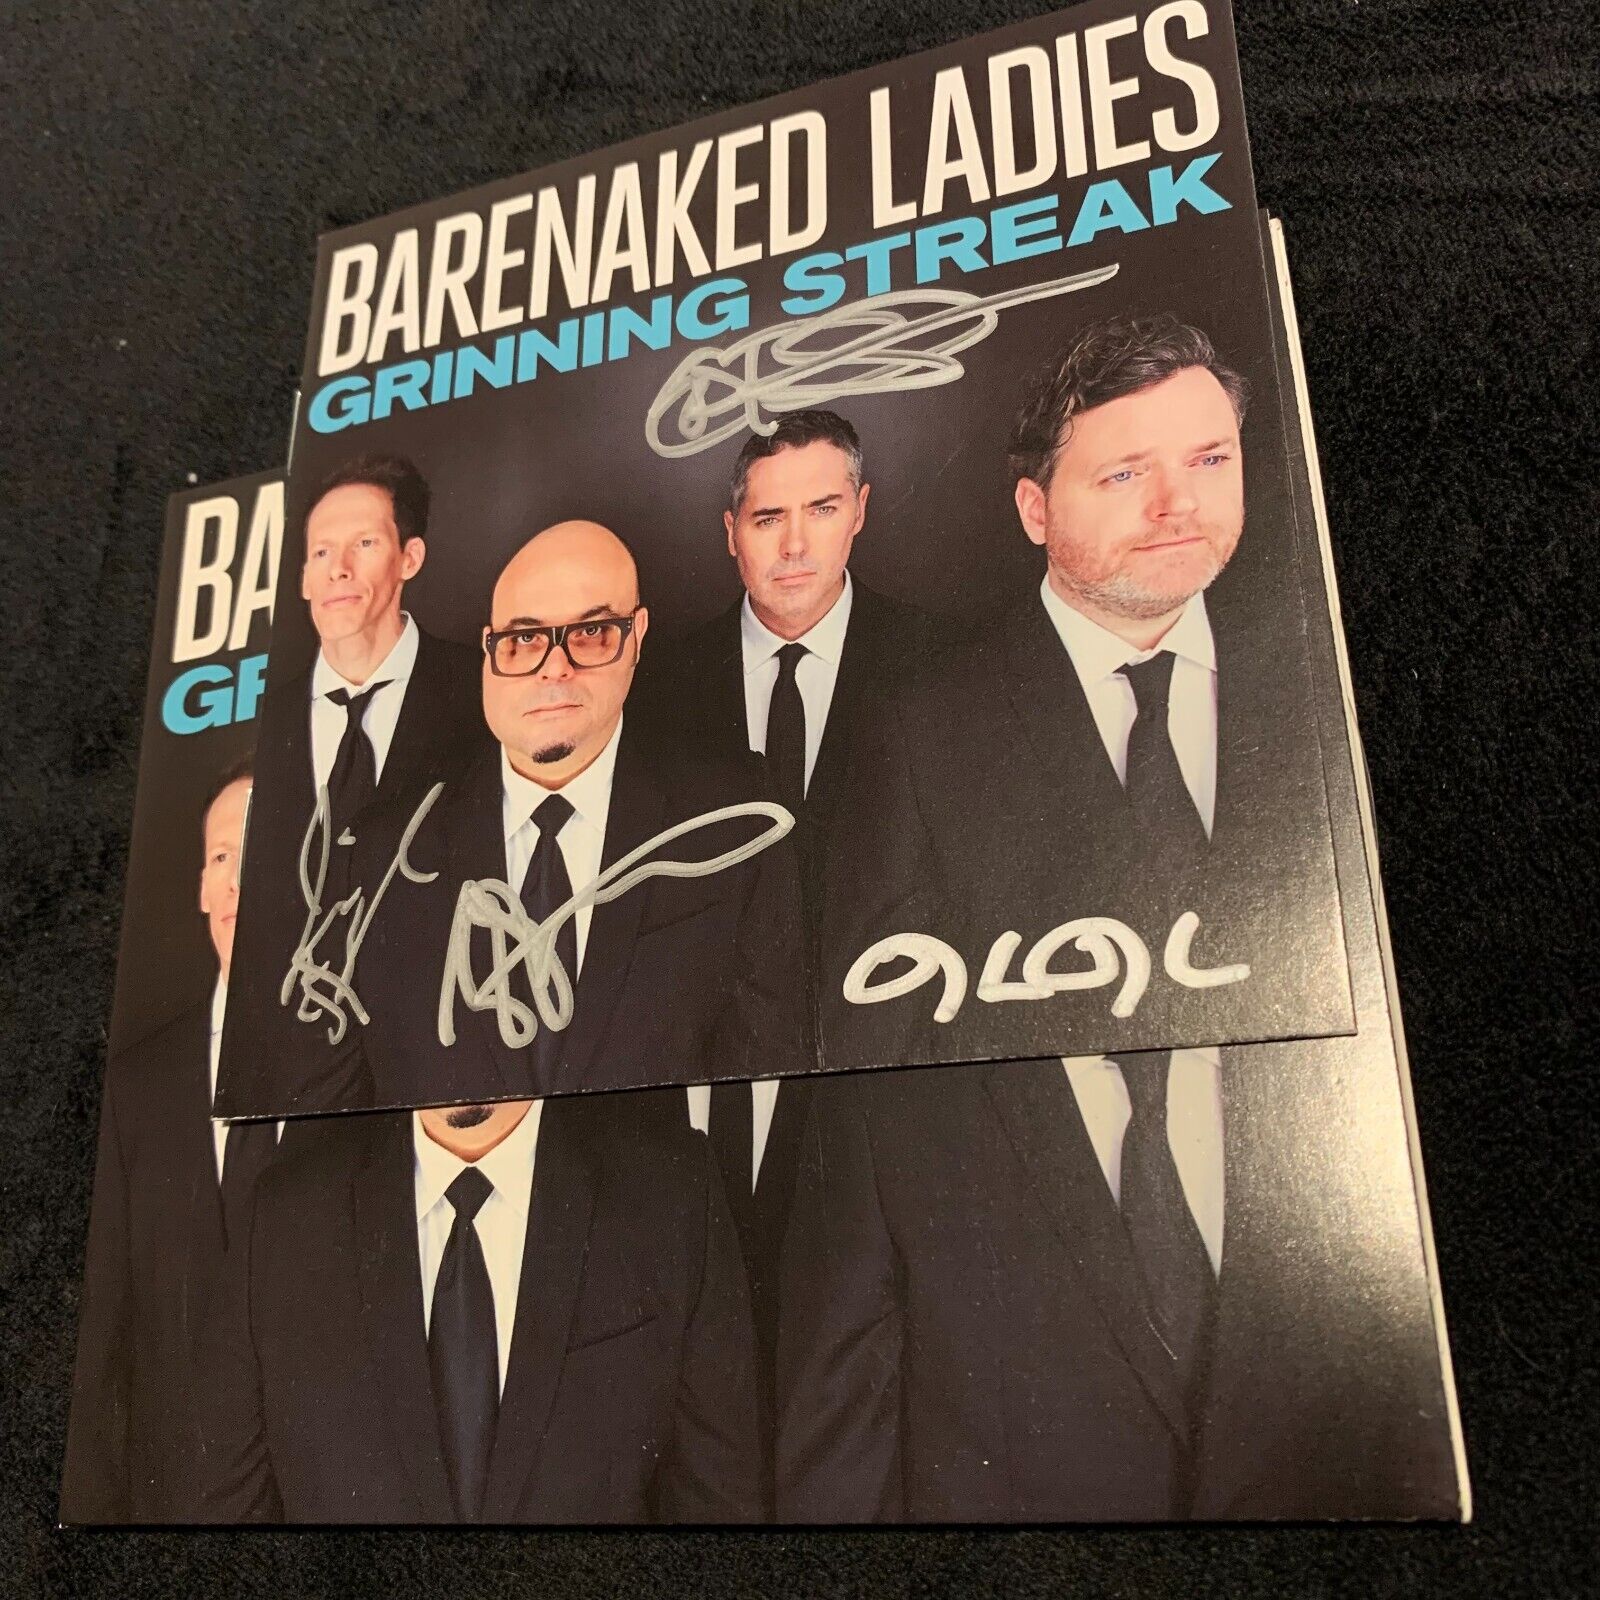 Barenaked Ladies Bnl "grinning Streak" Signed Autographed Cd